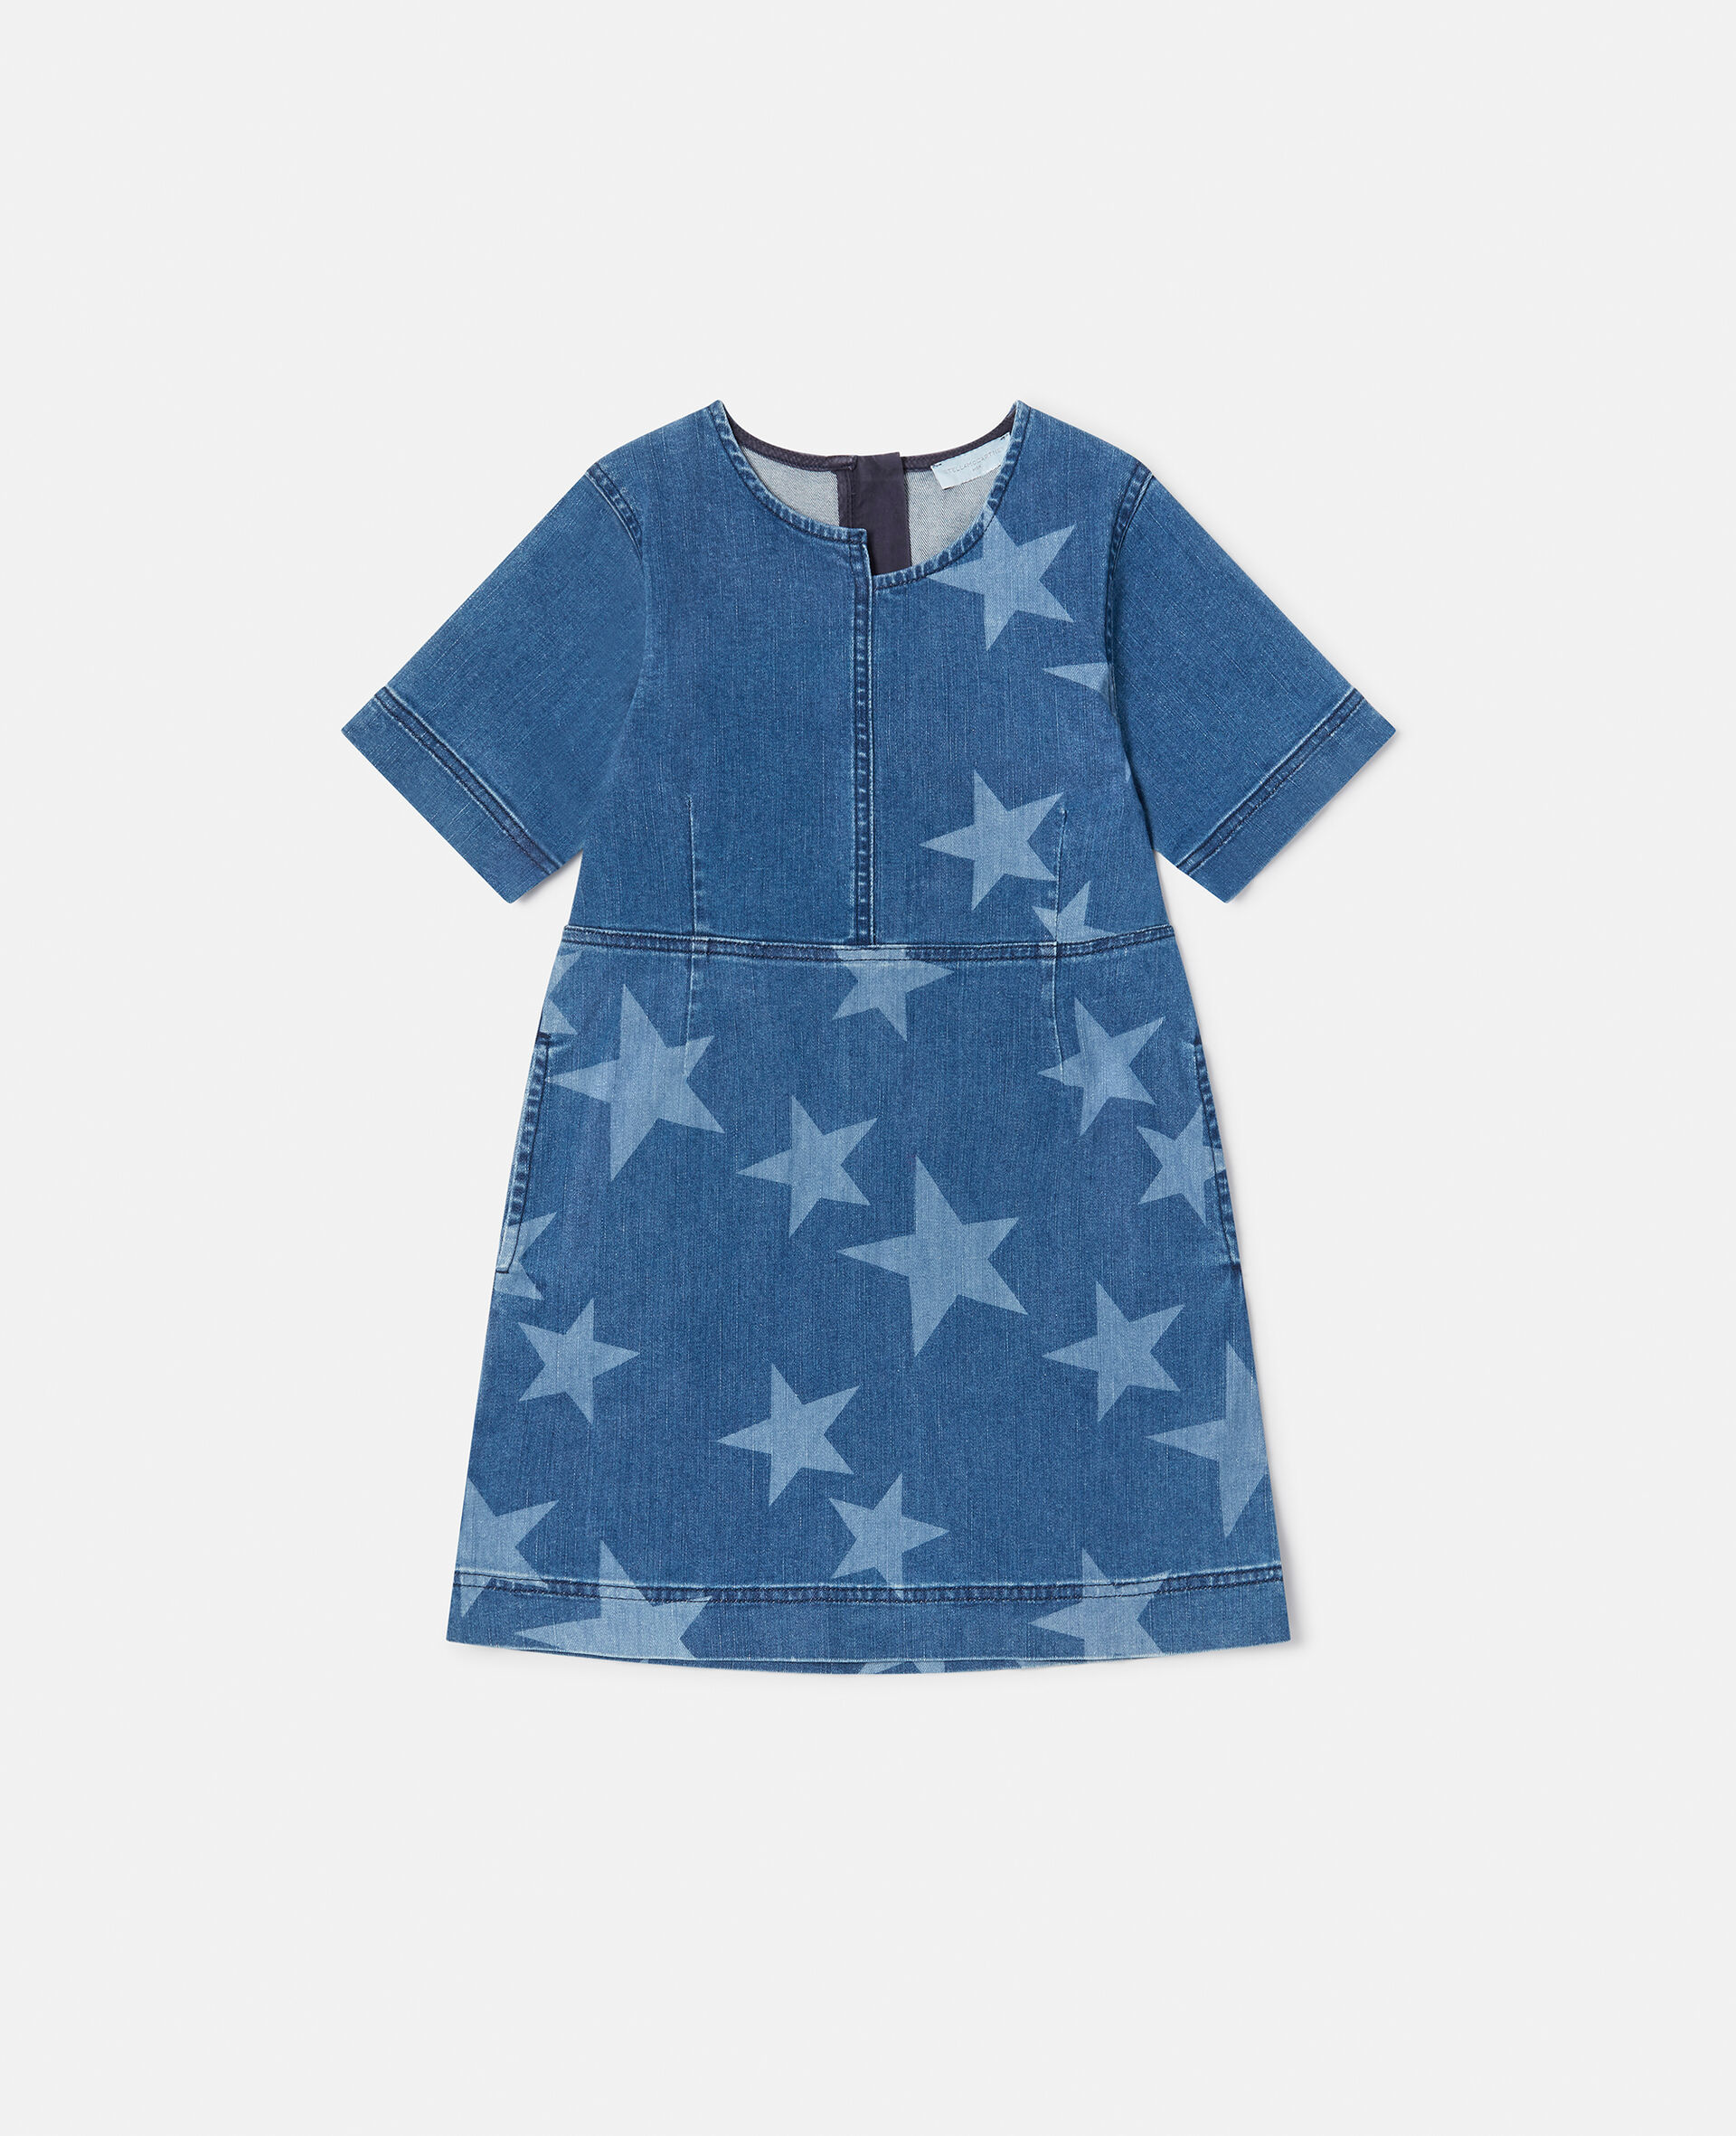 Star Print Denim Dress-Blue-large image number 0